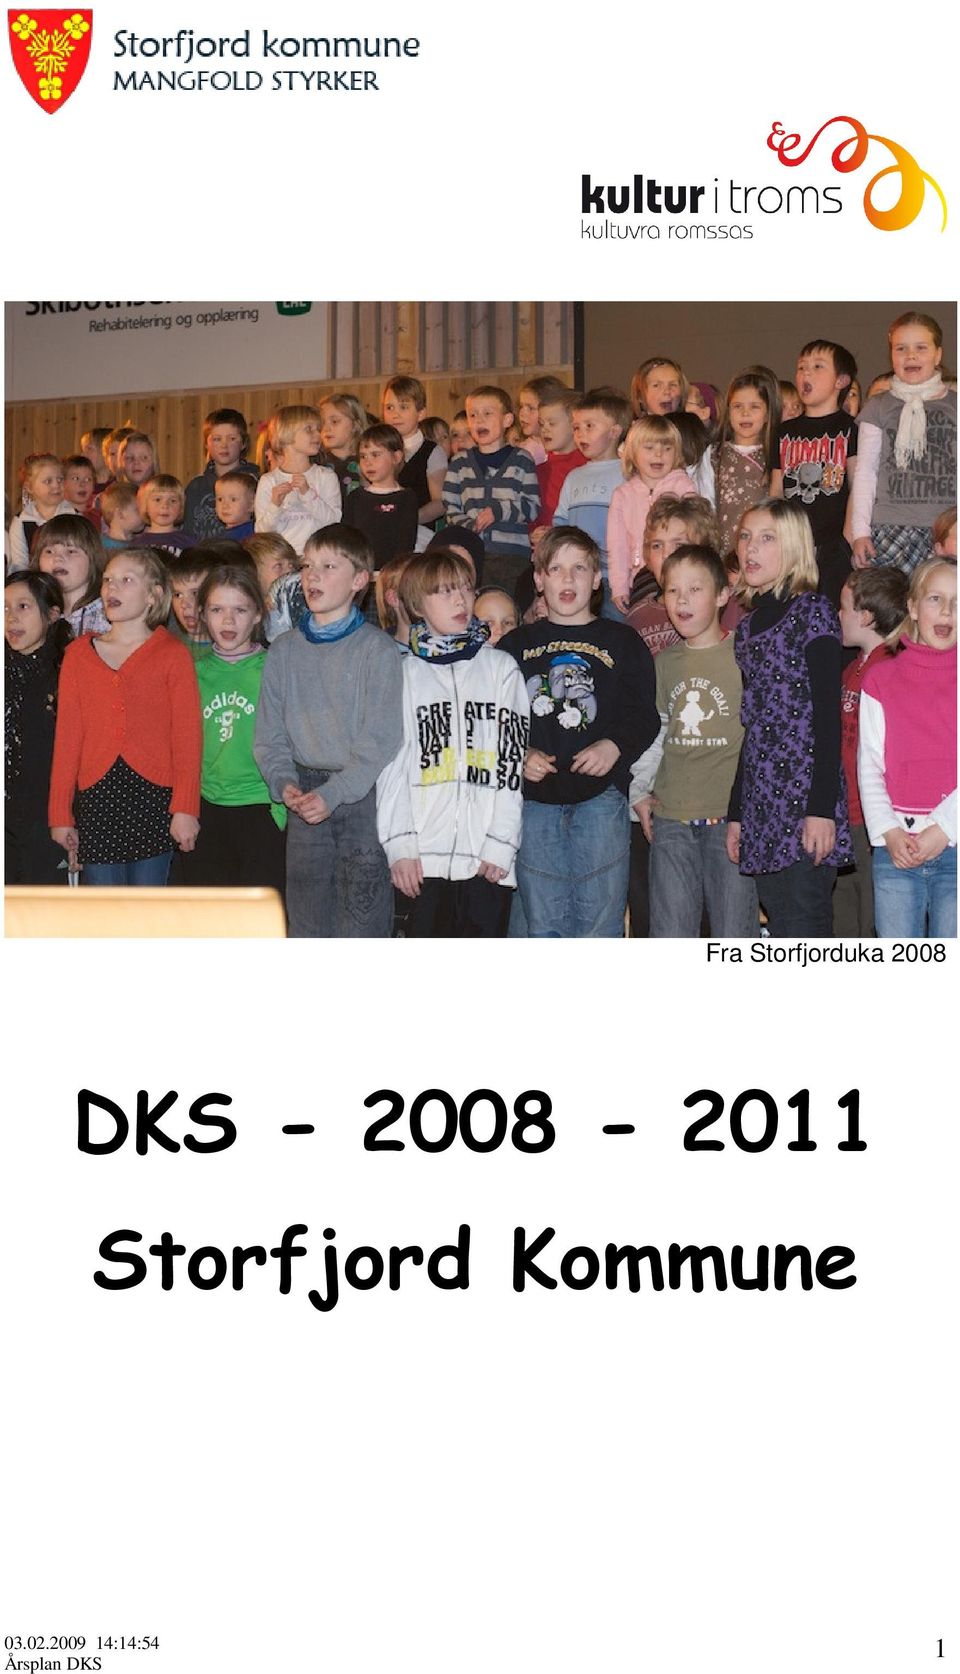 2008 DKS -